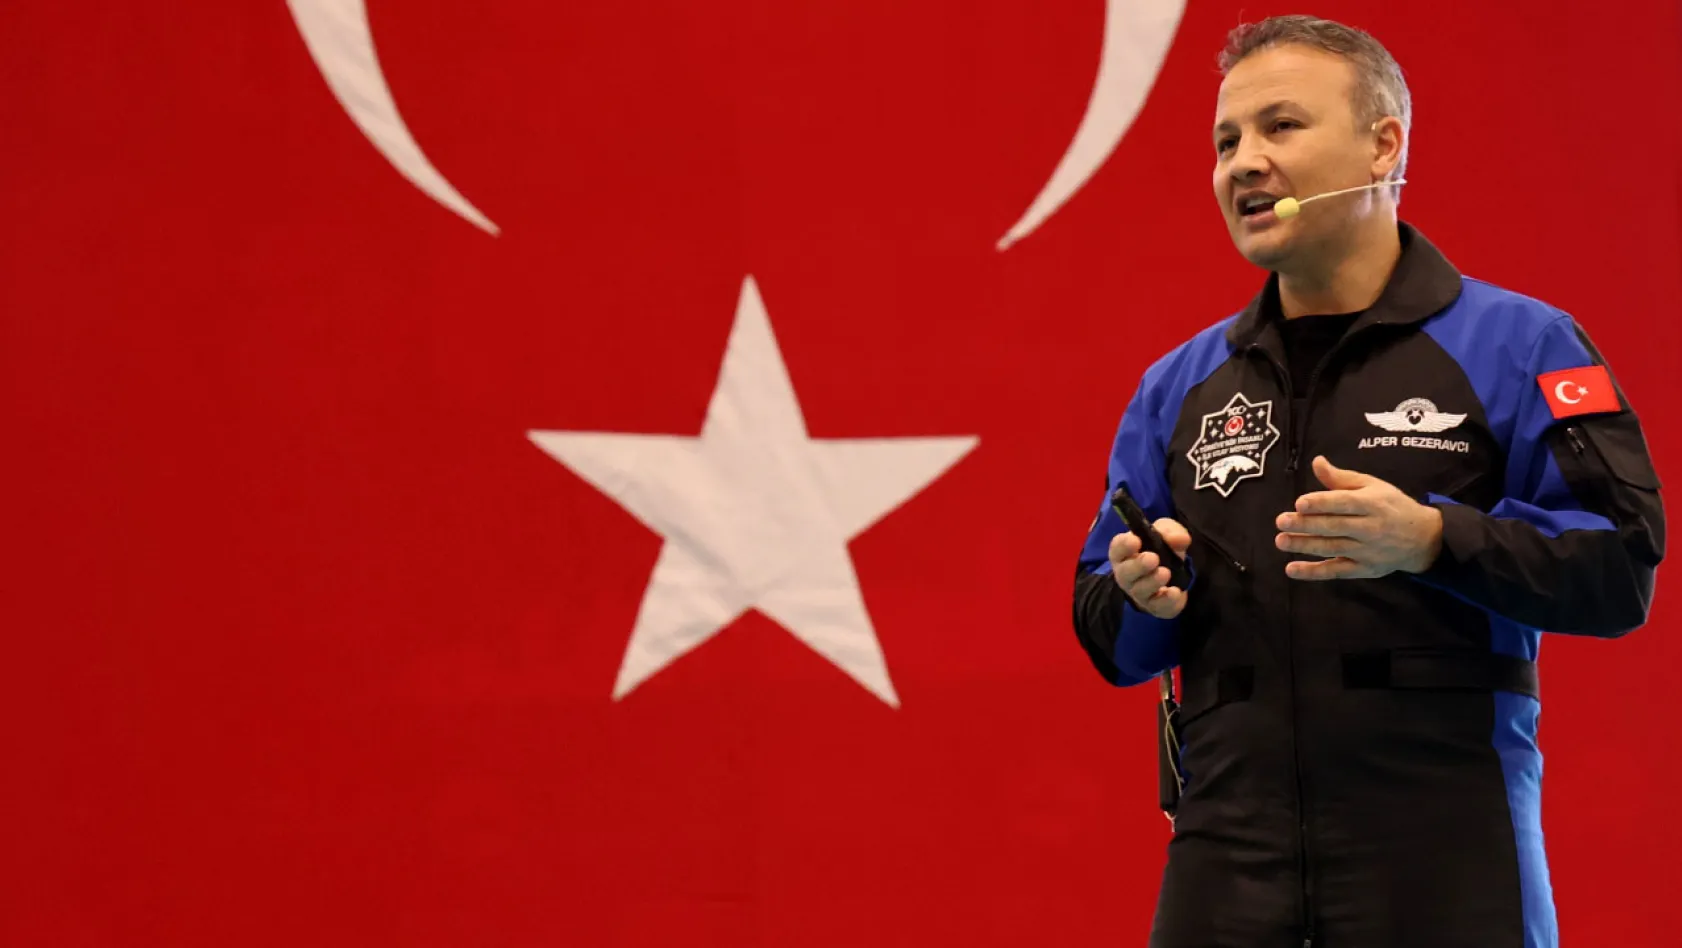 Türkiye'nin ilk astronotu Alper Gezeravcı, Elazığ'da